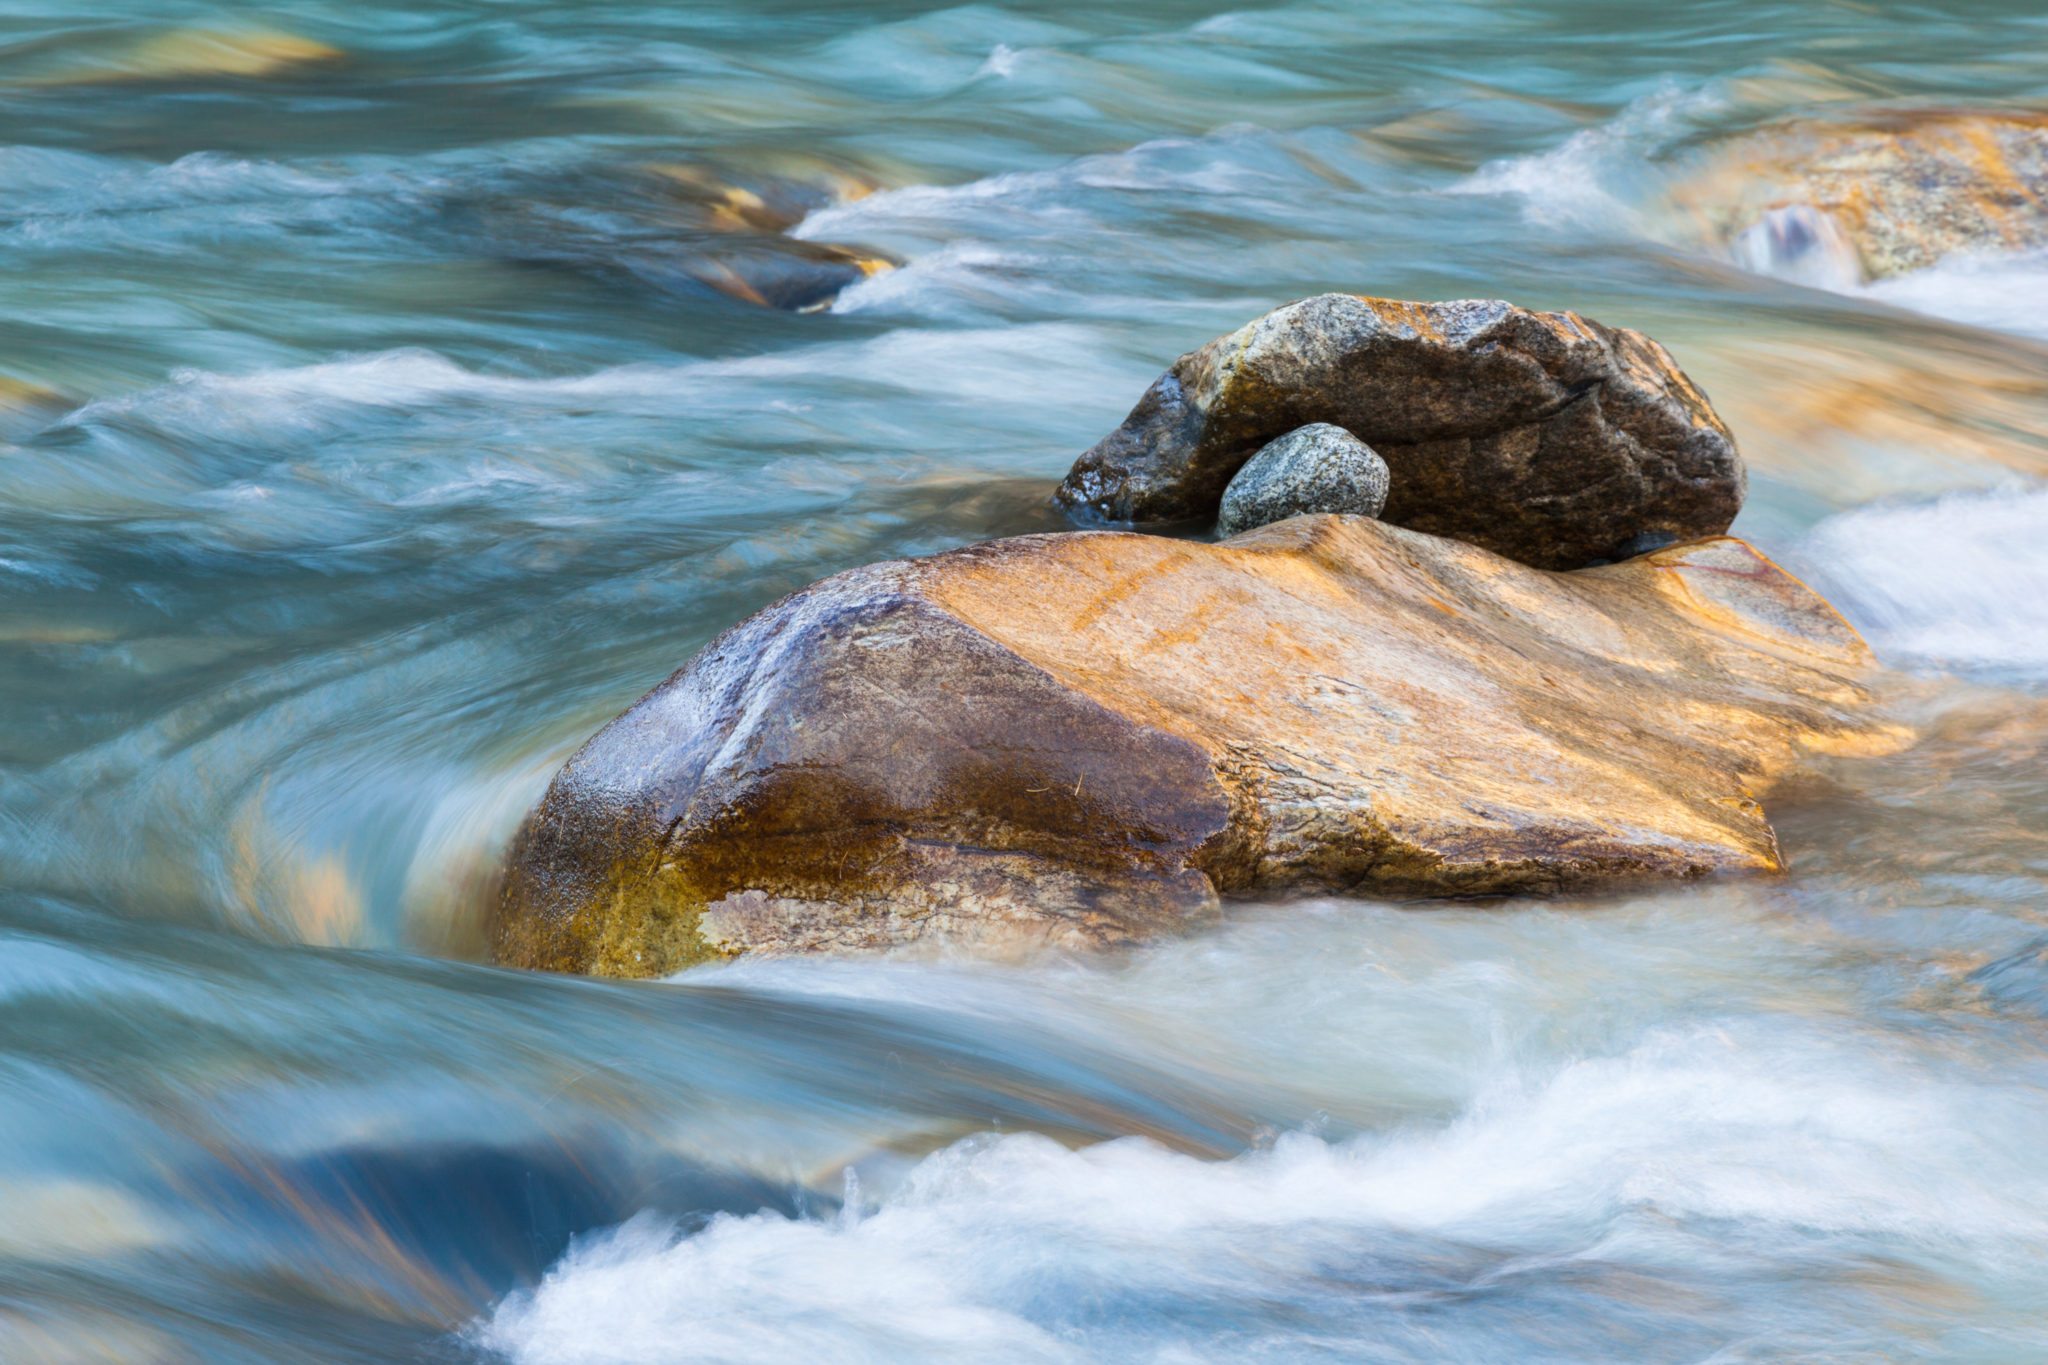 Rocks in a rapid river